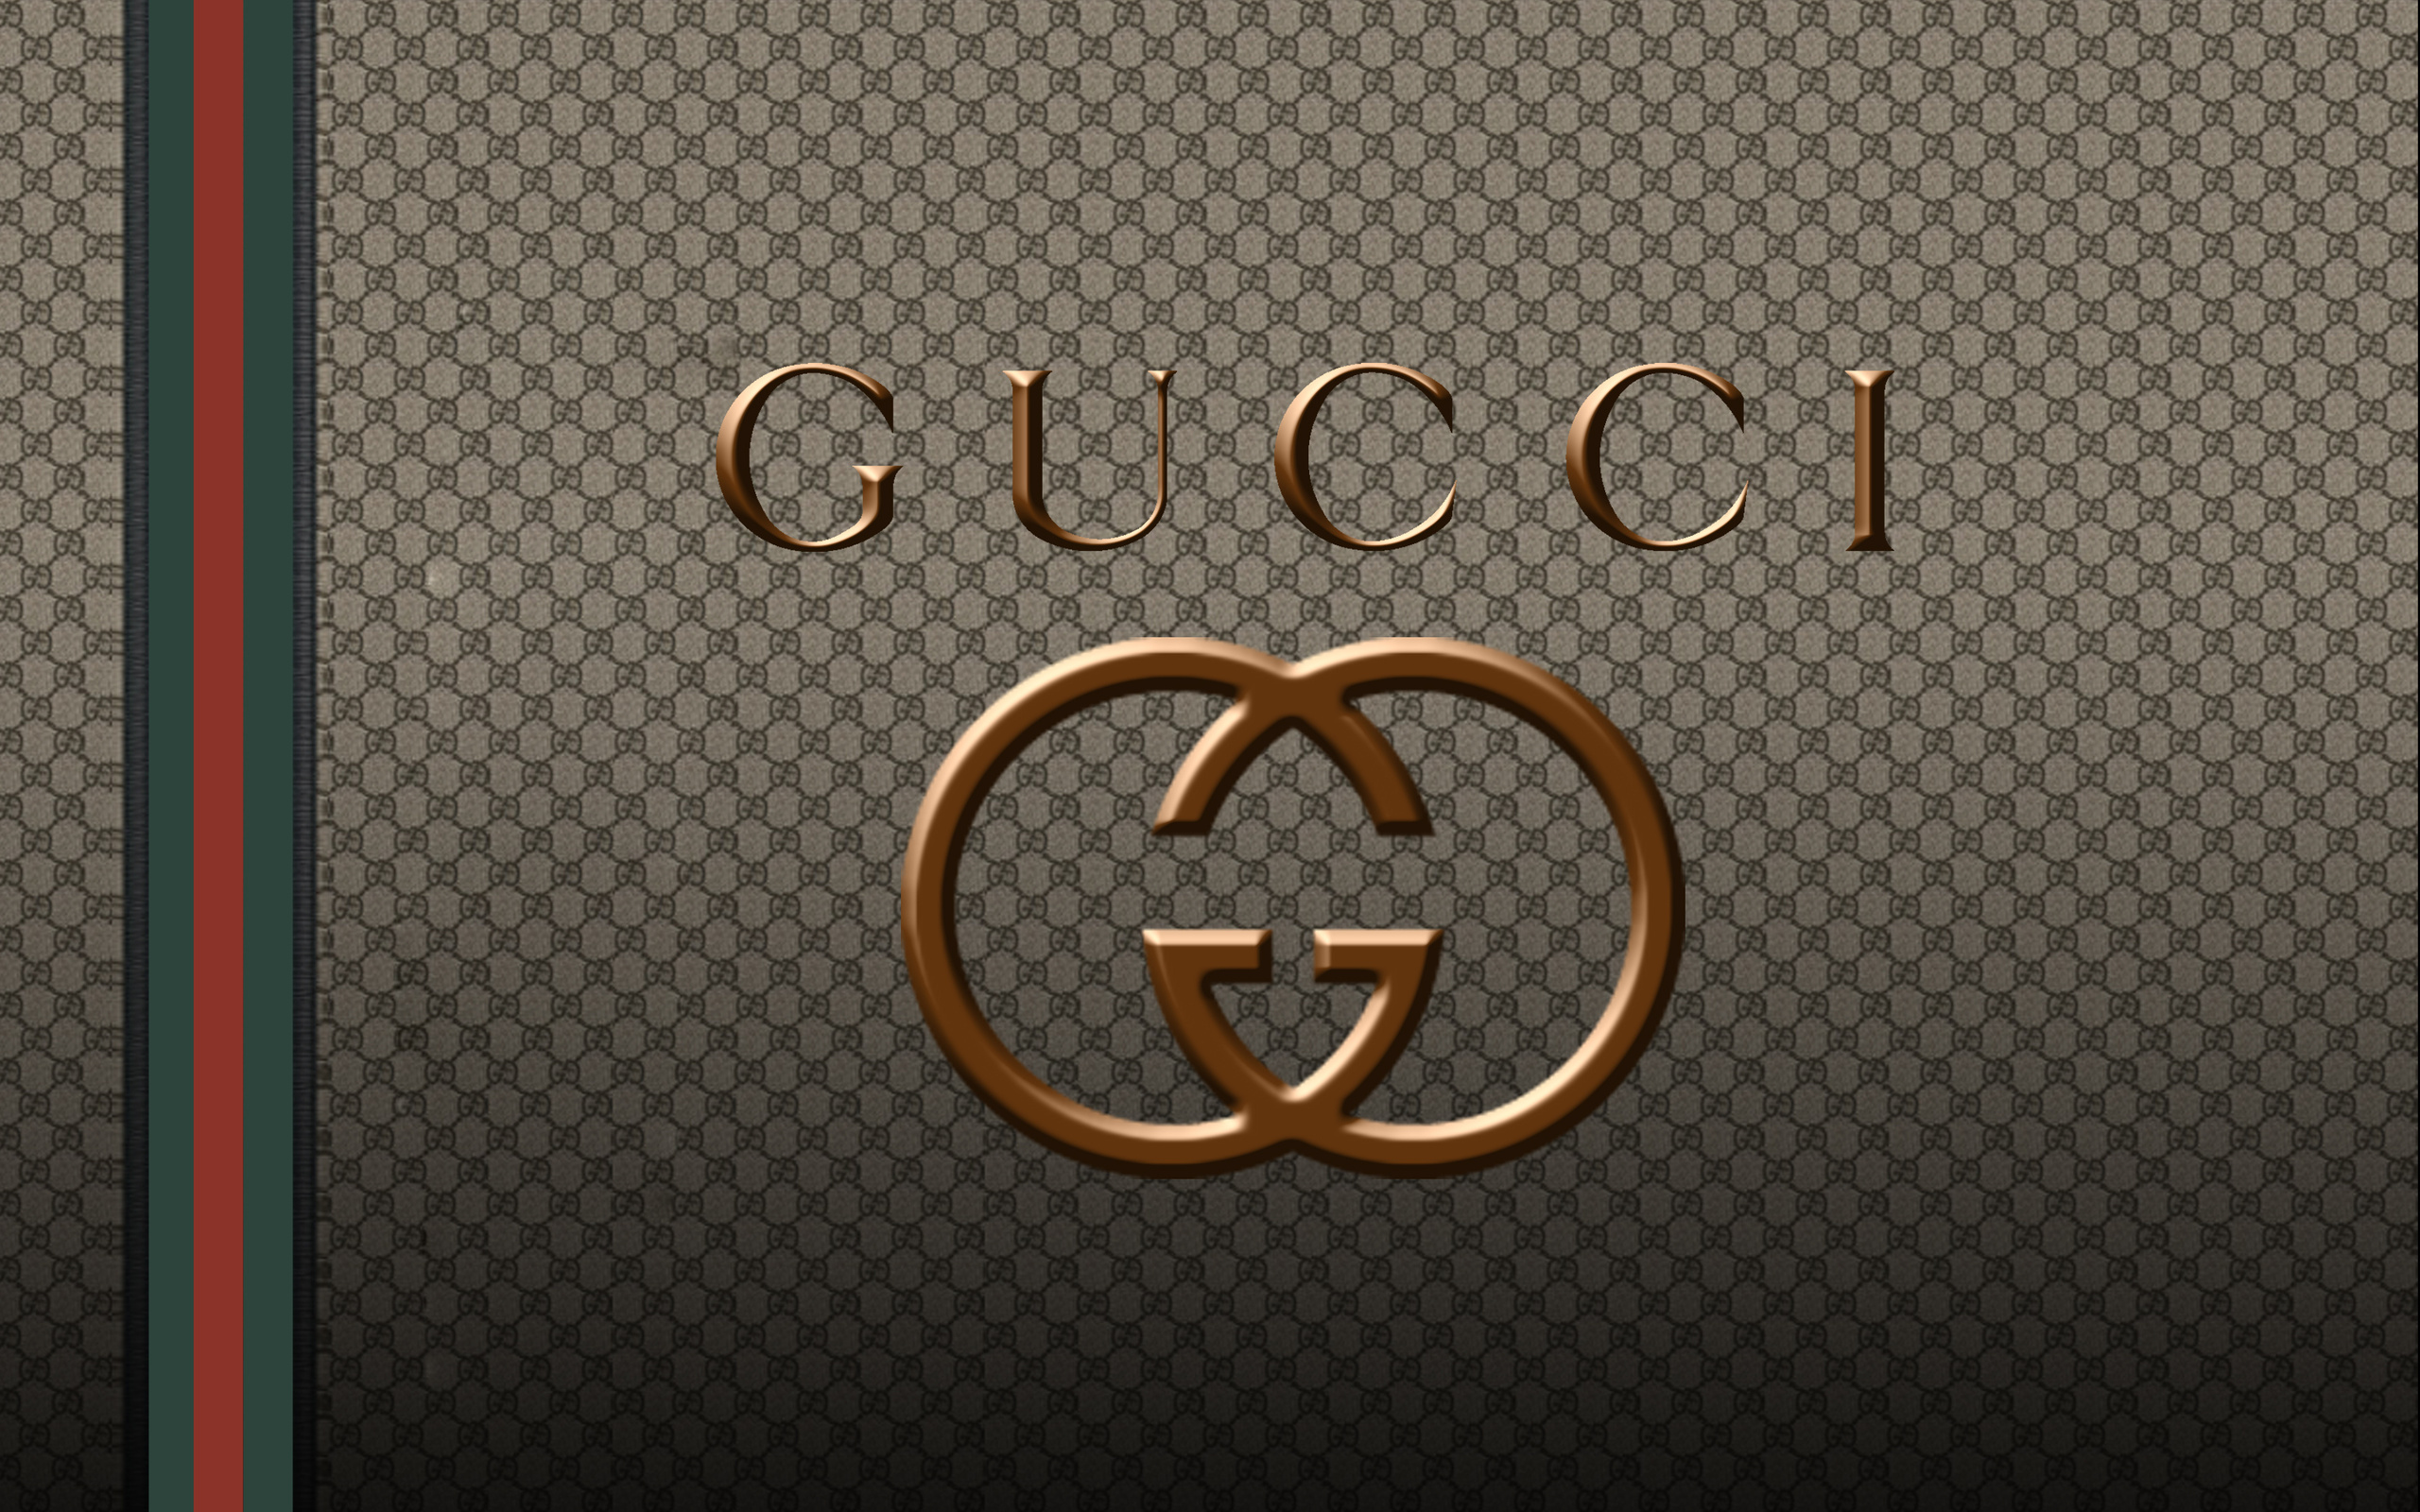 Gucci Cartoon Wallpapers - Wallpaper Cave